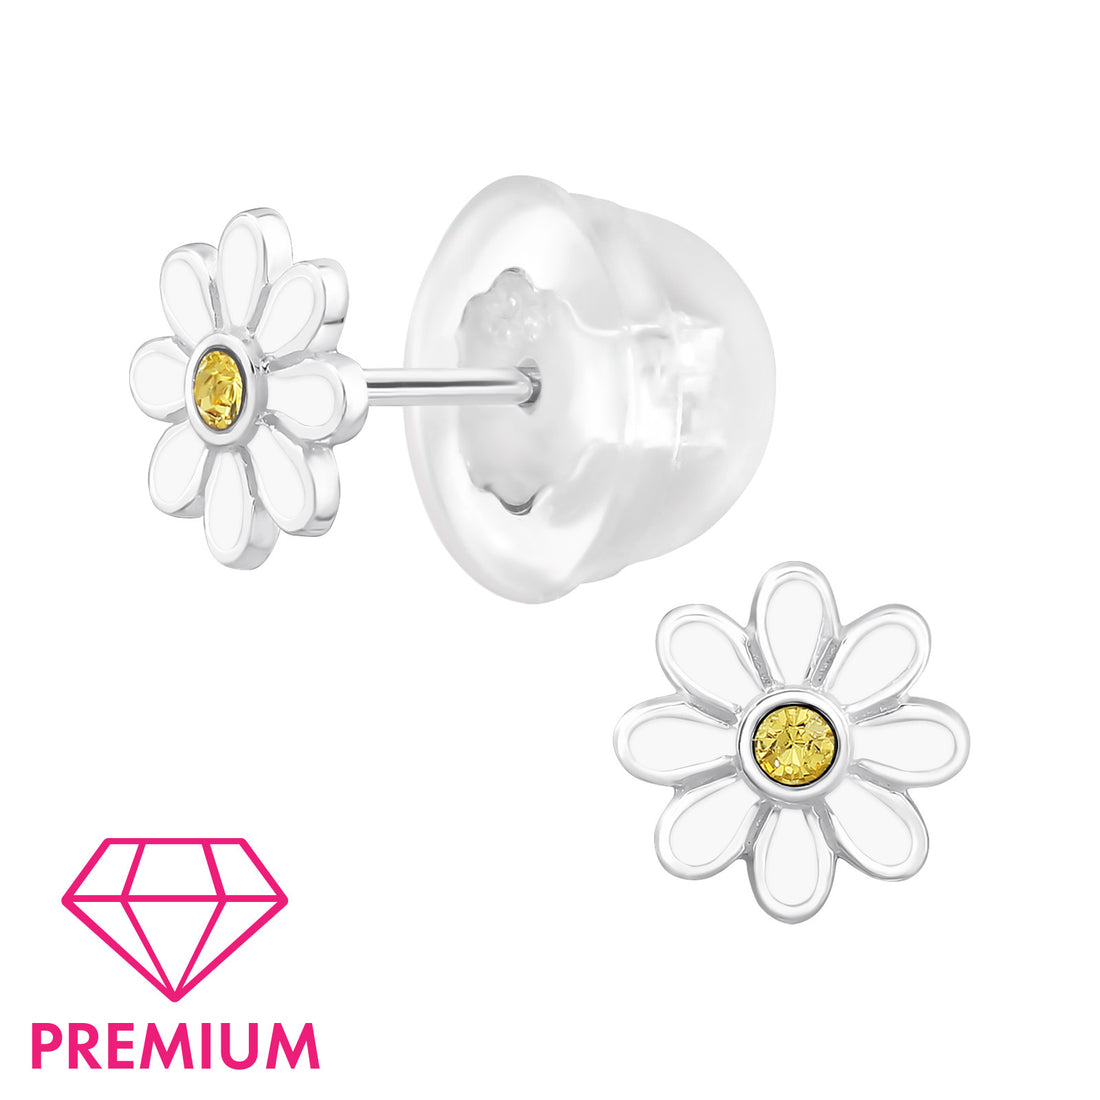 Zilveren kinderoorbellen Premium: Wit bloemetje